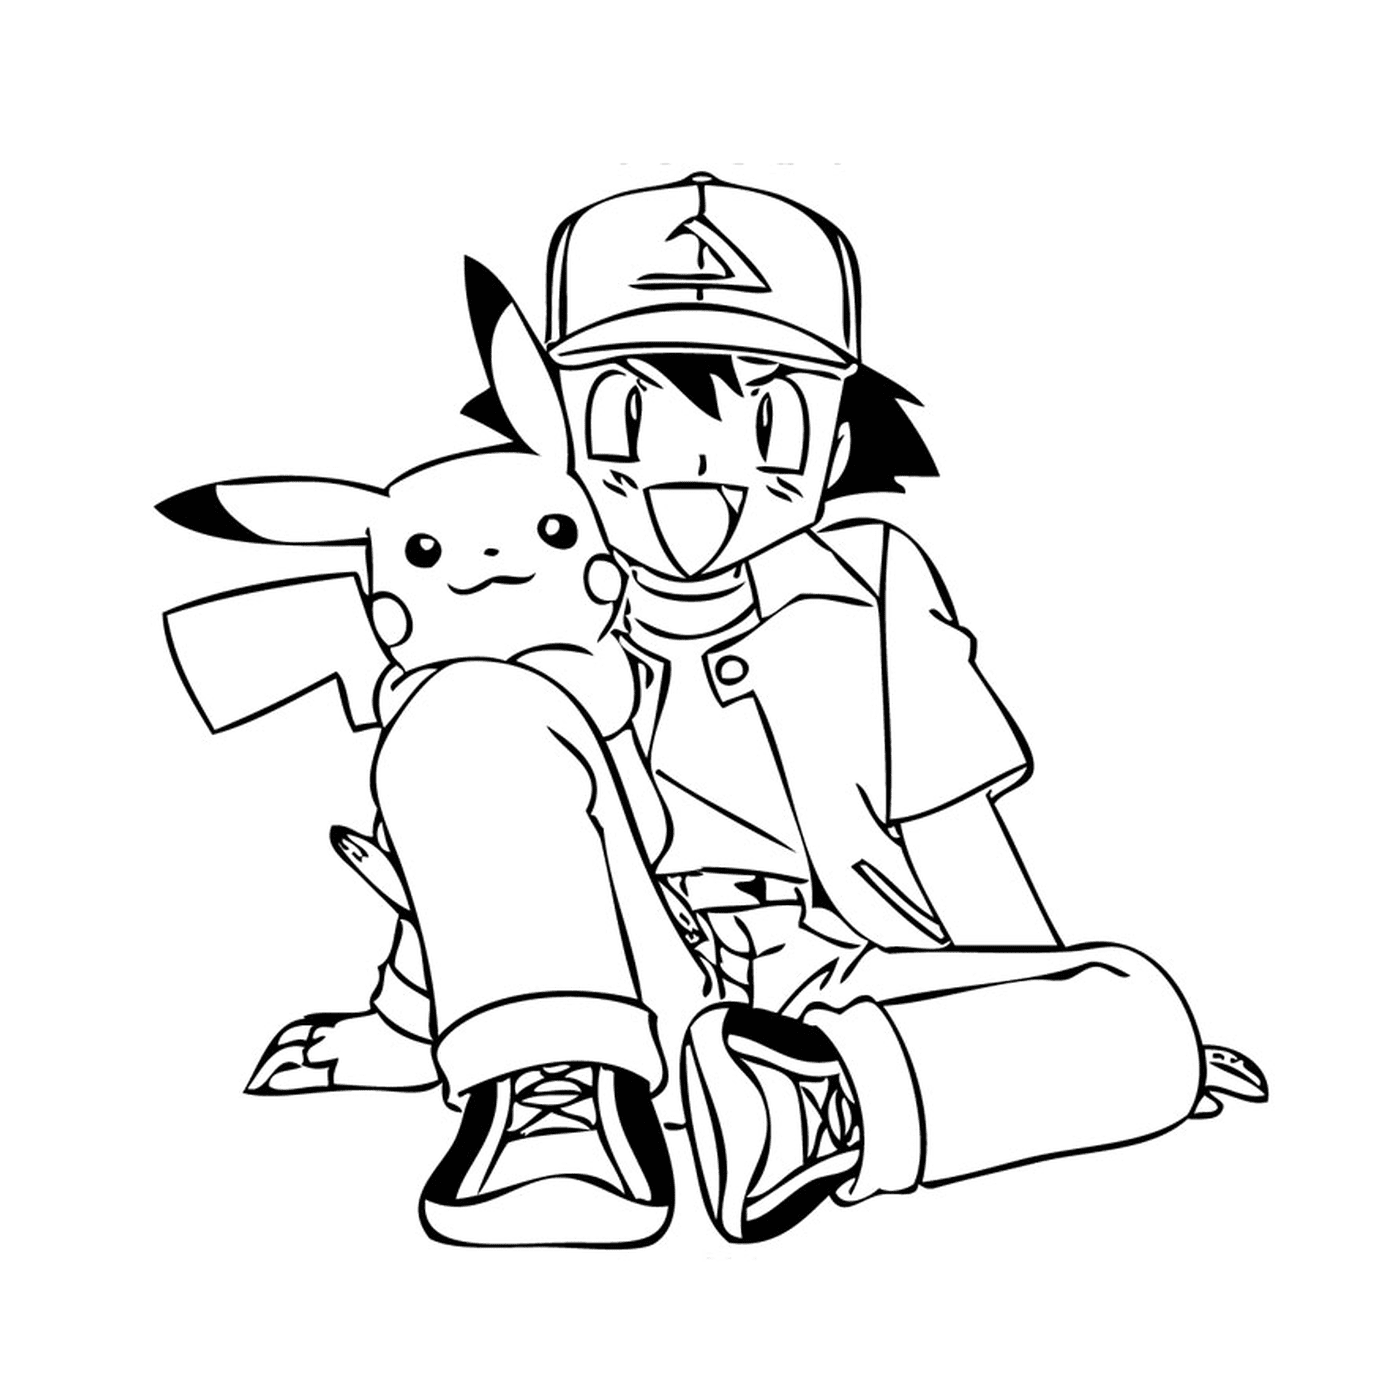   Une personne assise par terre avec un Pikachu 